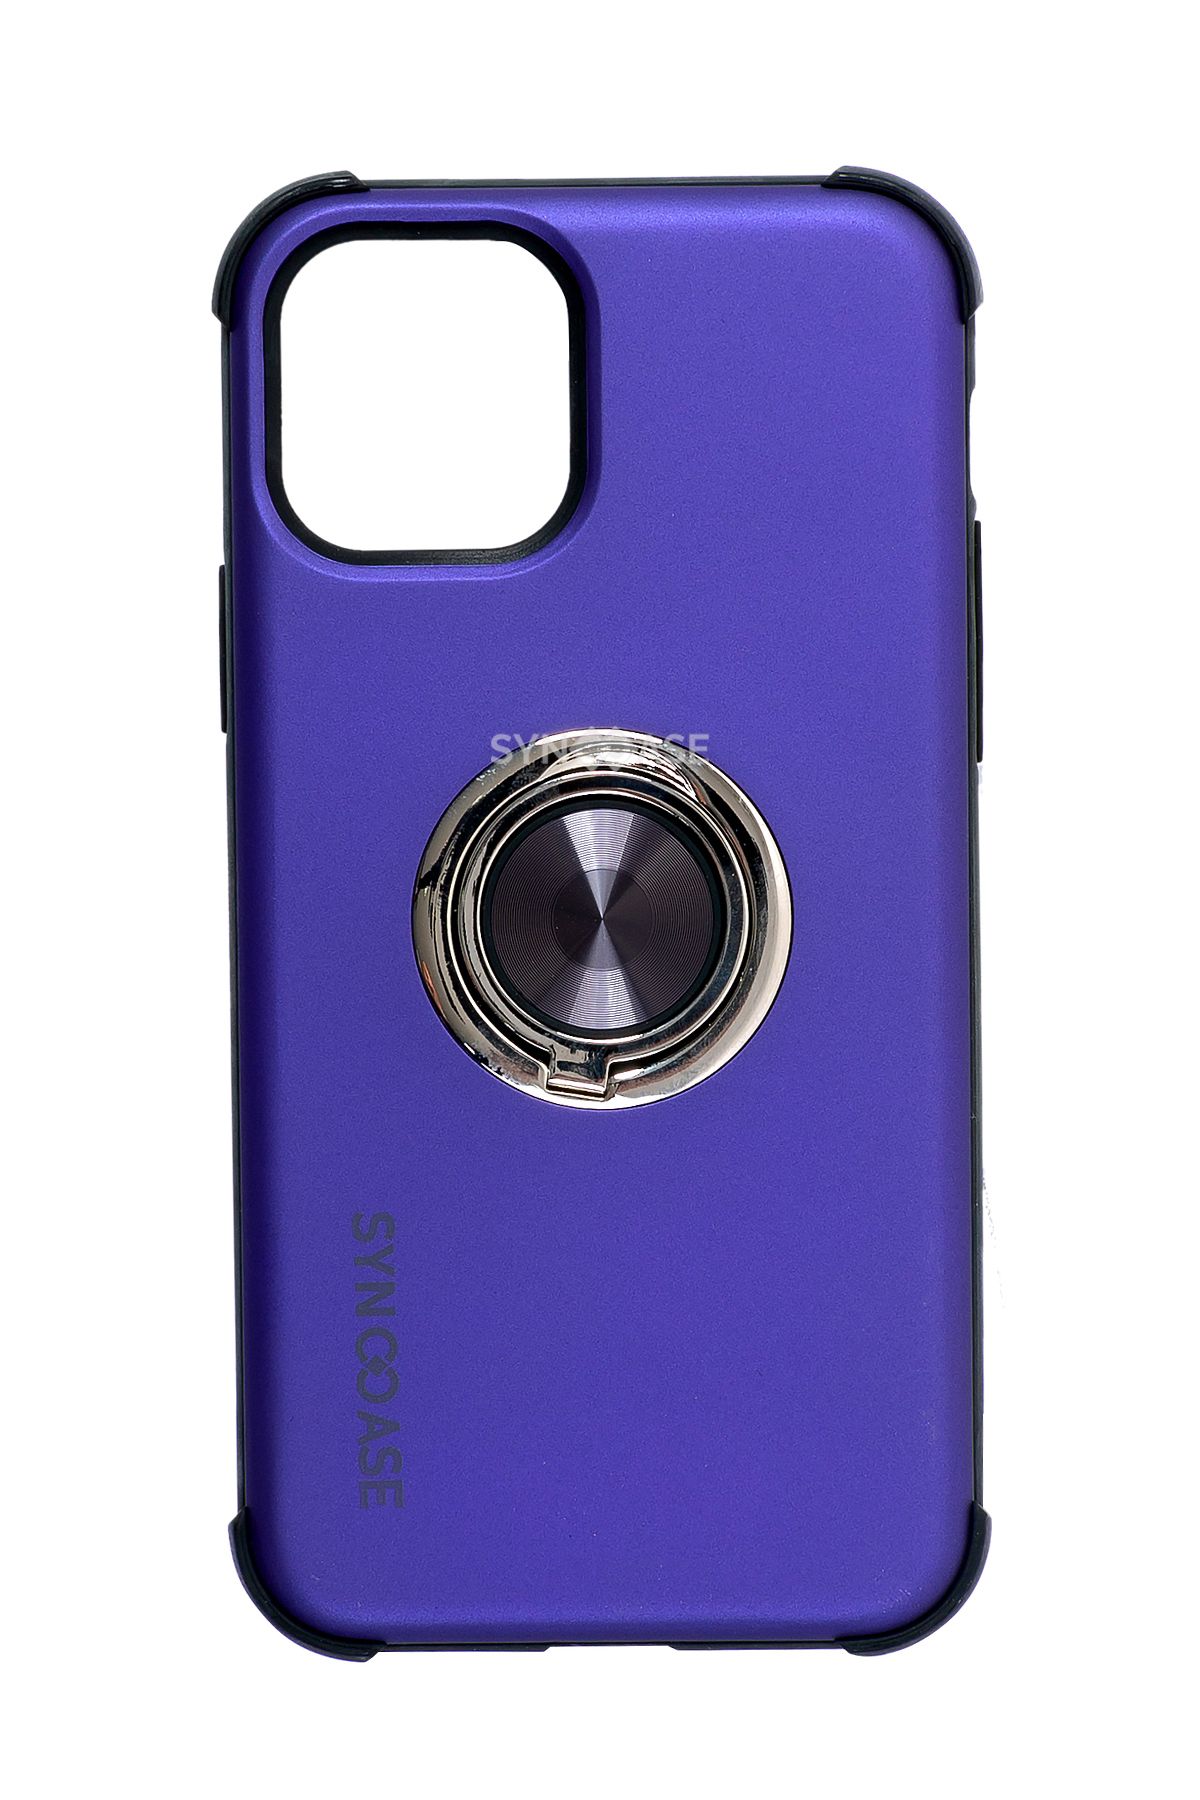 SyncCase Iphone 11 Pro Max Kılıf Ile Uyumlu Telefon Kılıfı Darbeye Dayanıklı Telefon Kabı Mor